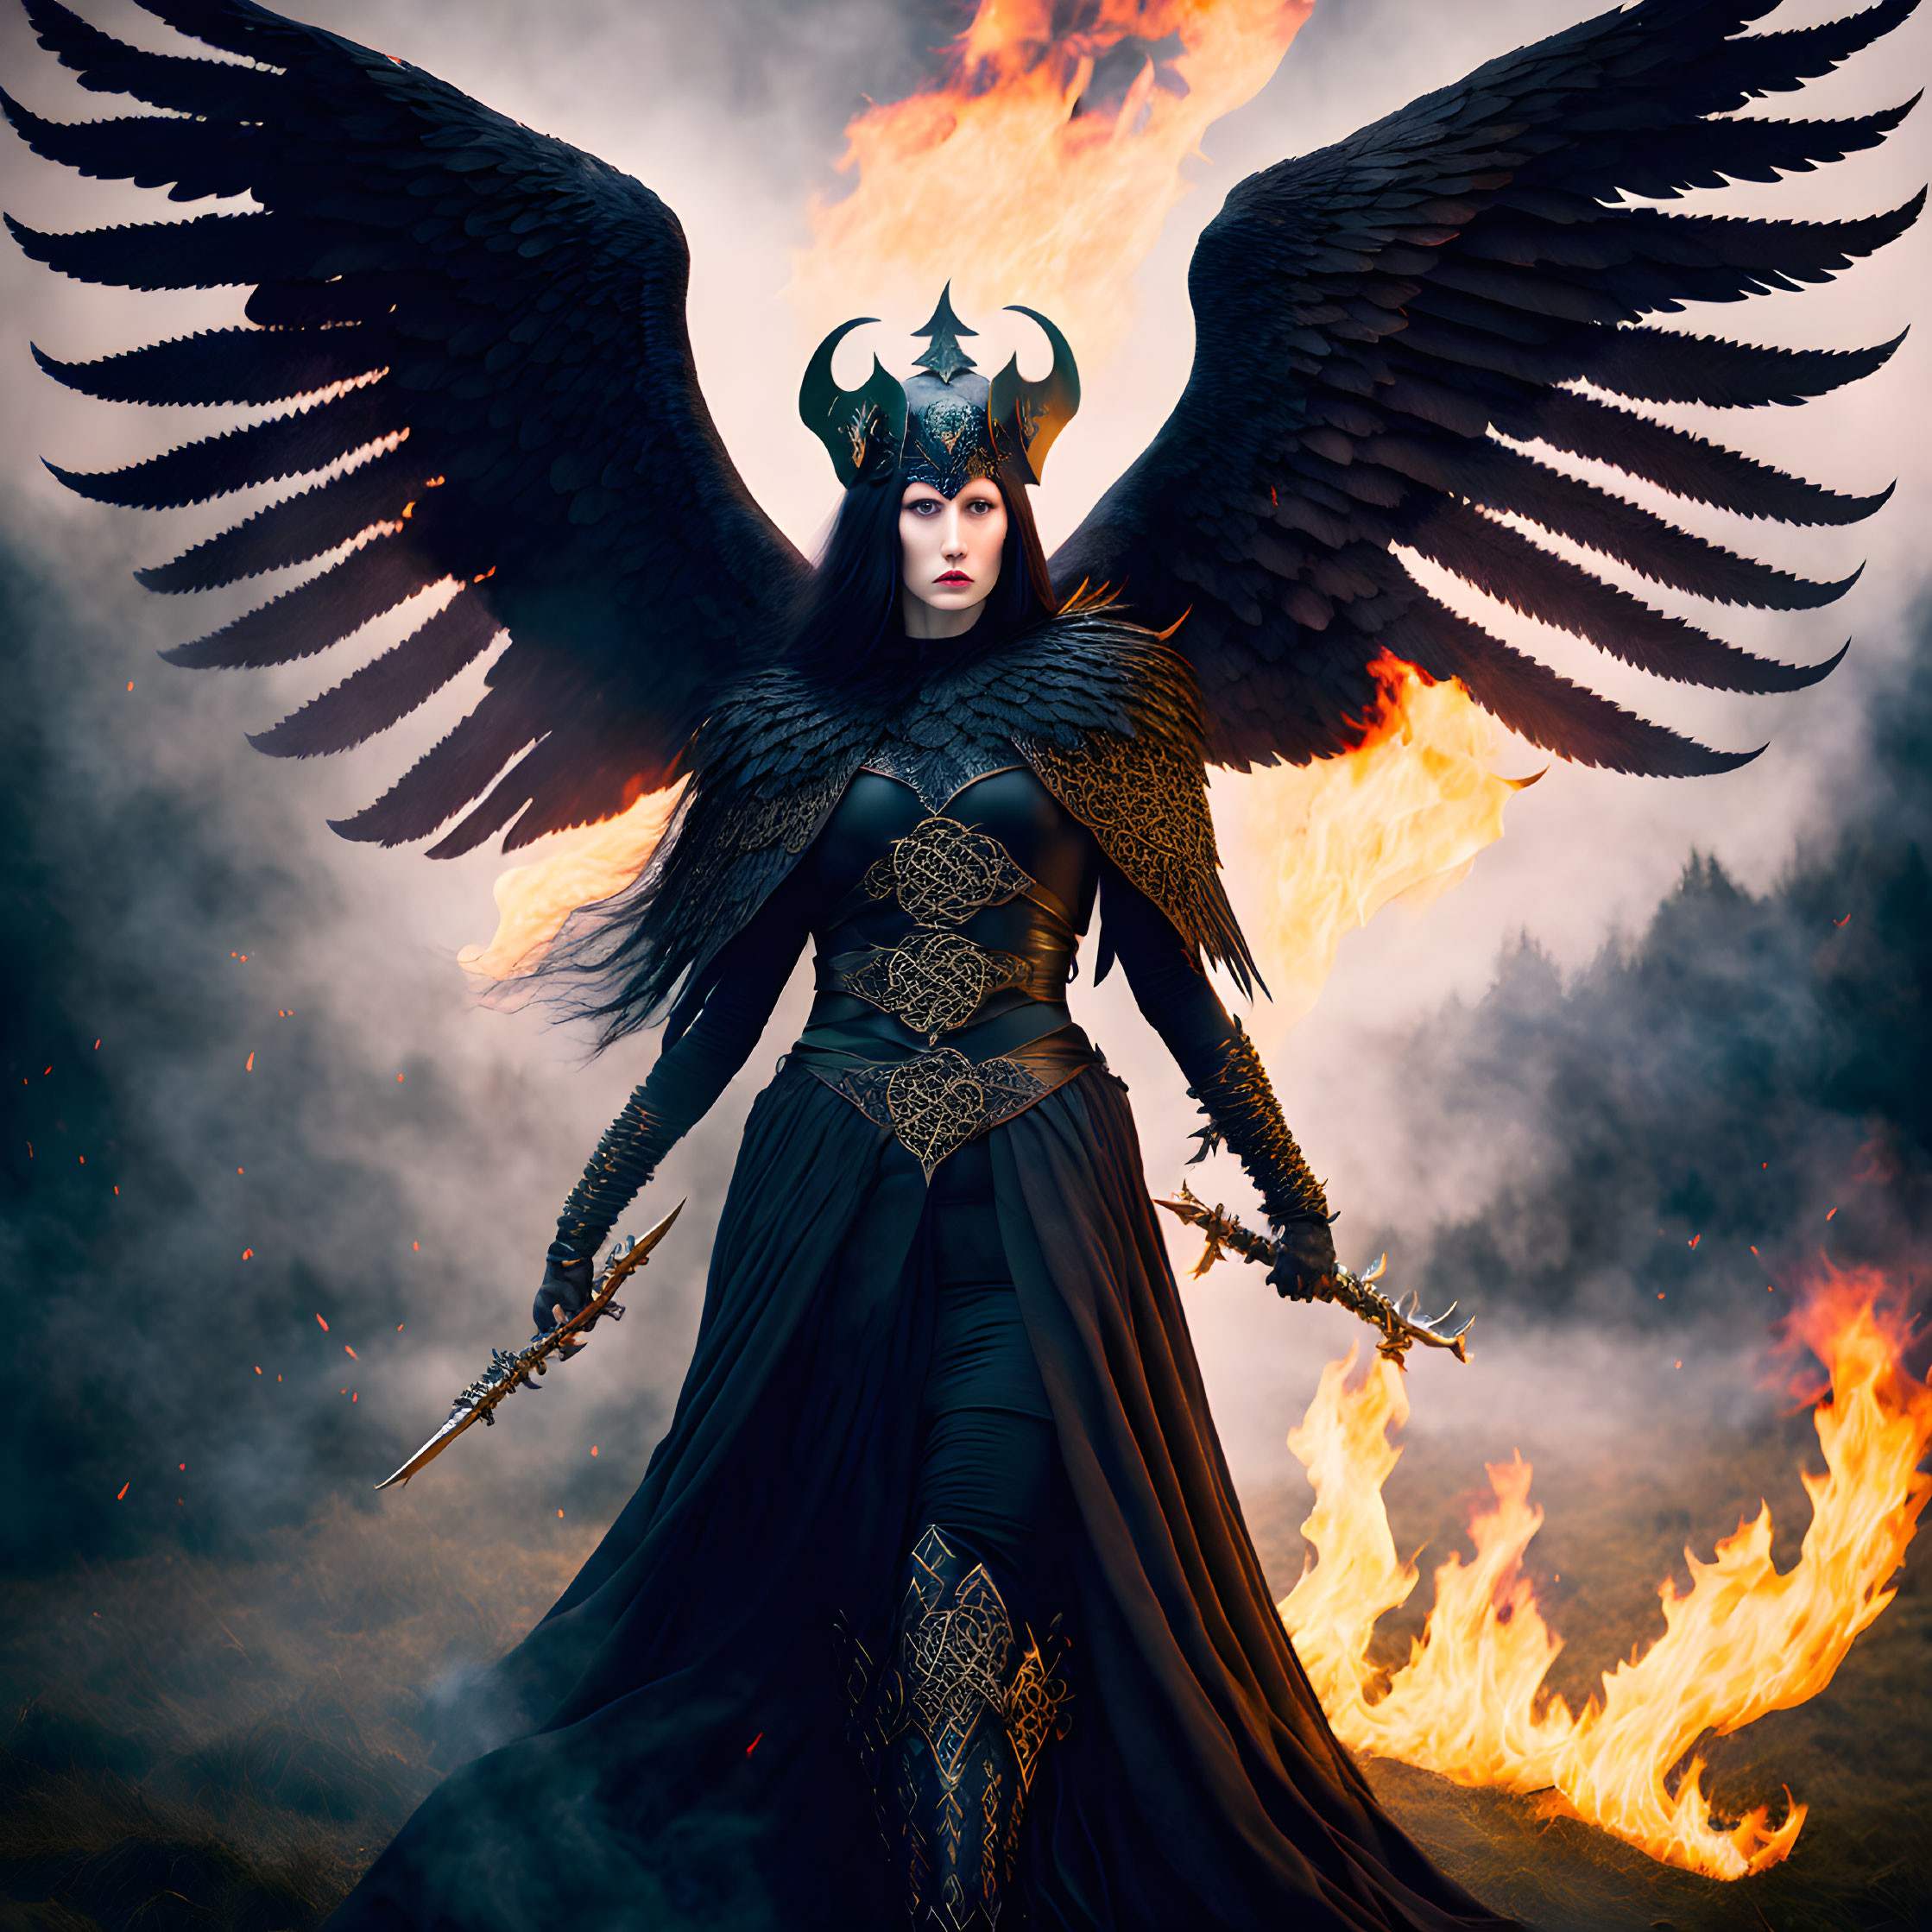 Morrigan - Celtic goddess of war and death